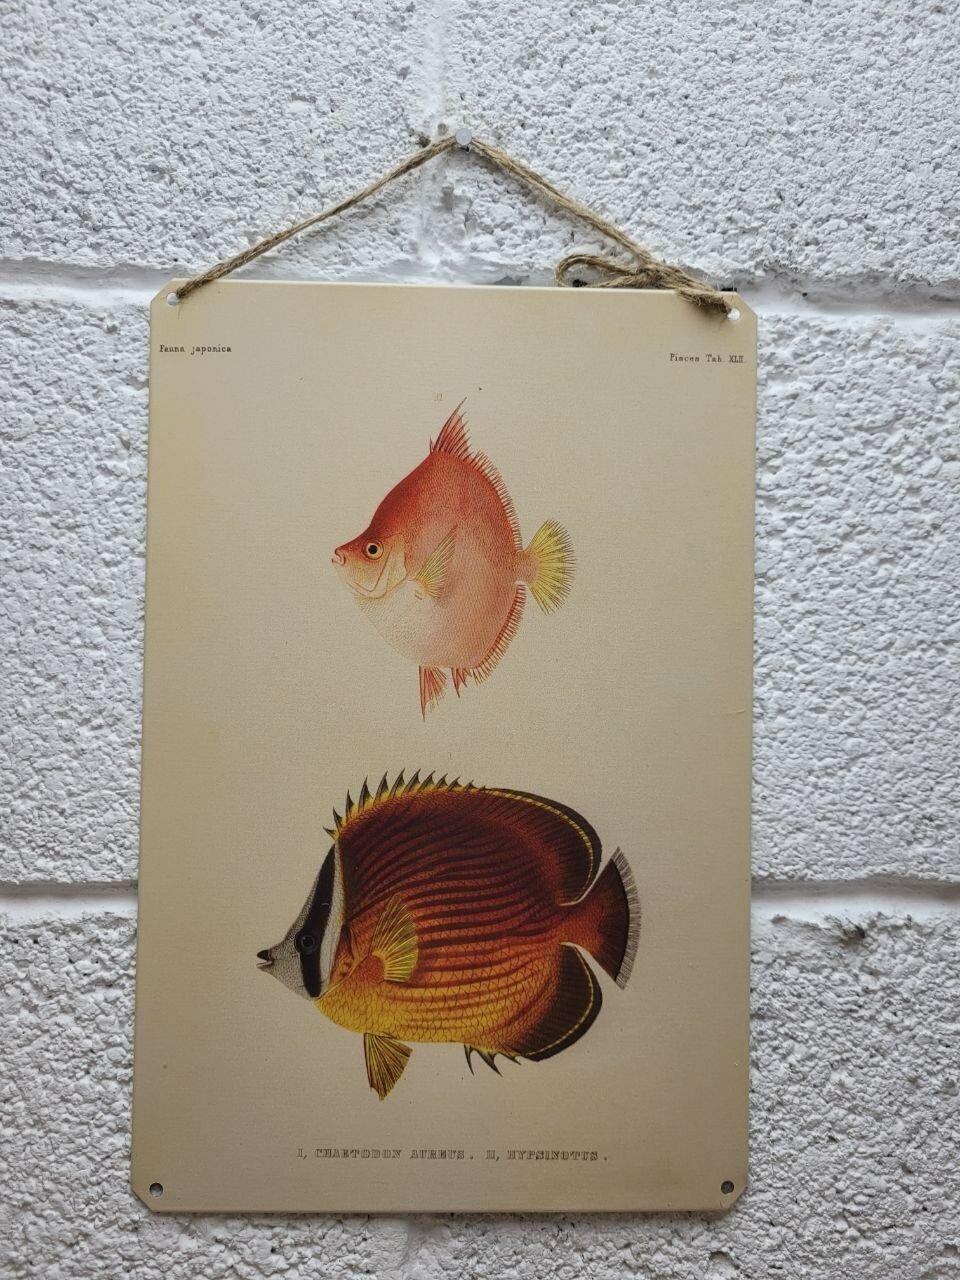 Трёхполосая рыба-бабочка постер 20 на 30 см, шнур-подвес в подарок